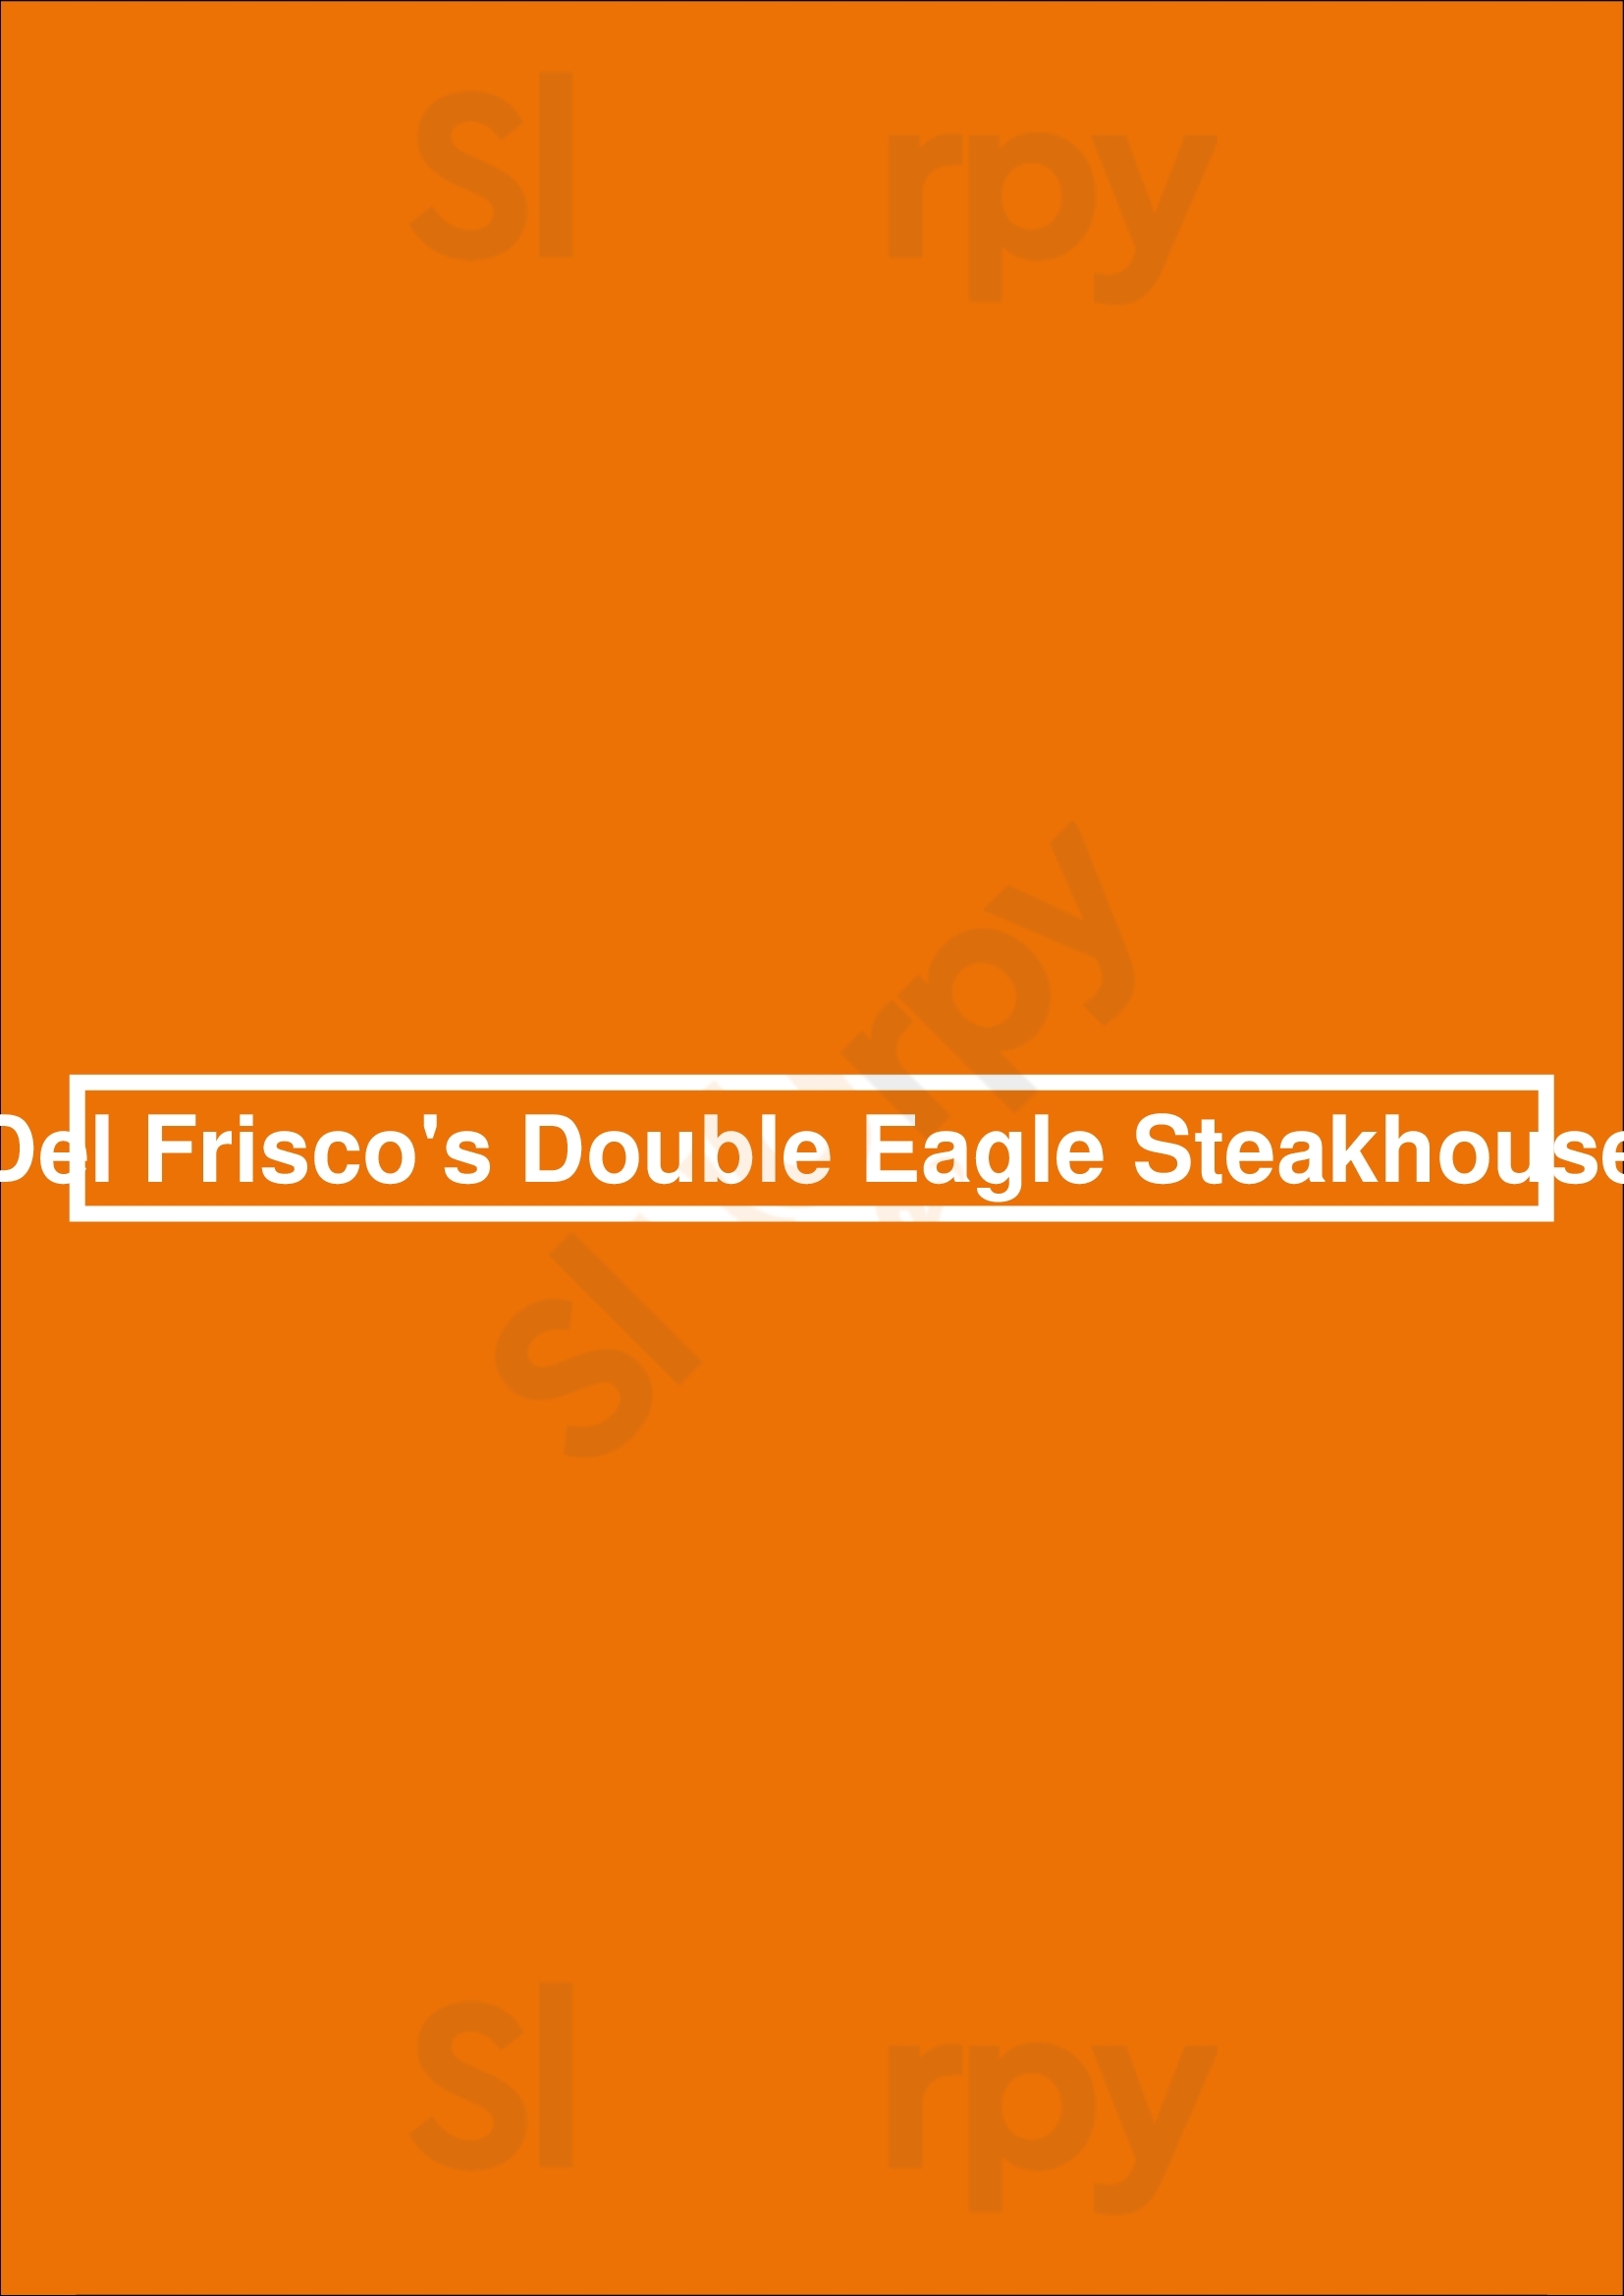 Del Frisco's Double Eagle Steakhouse Washington DC Menu - 1